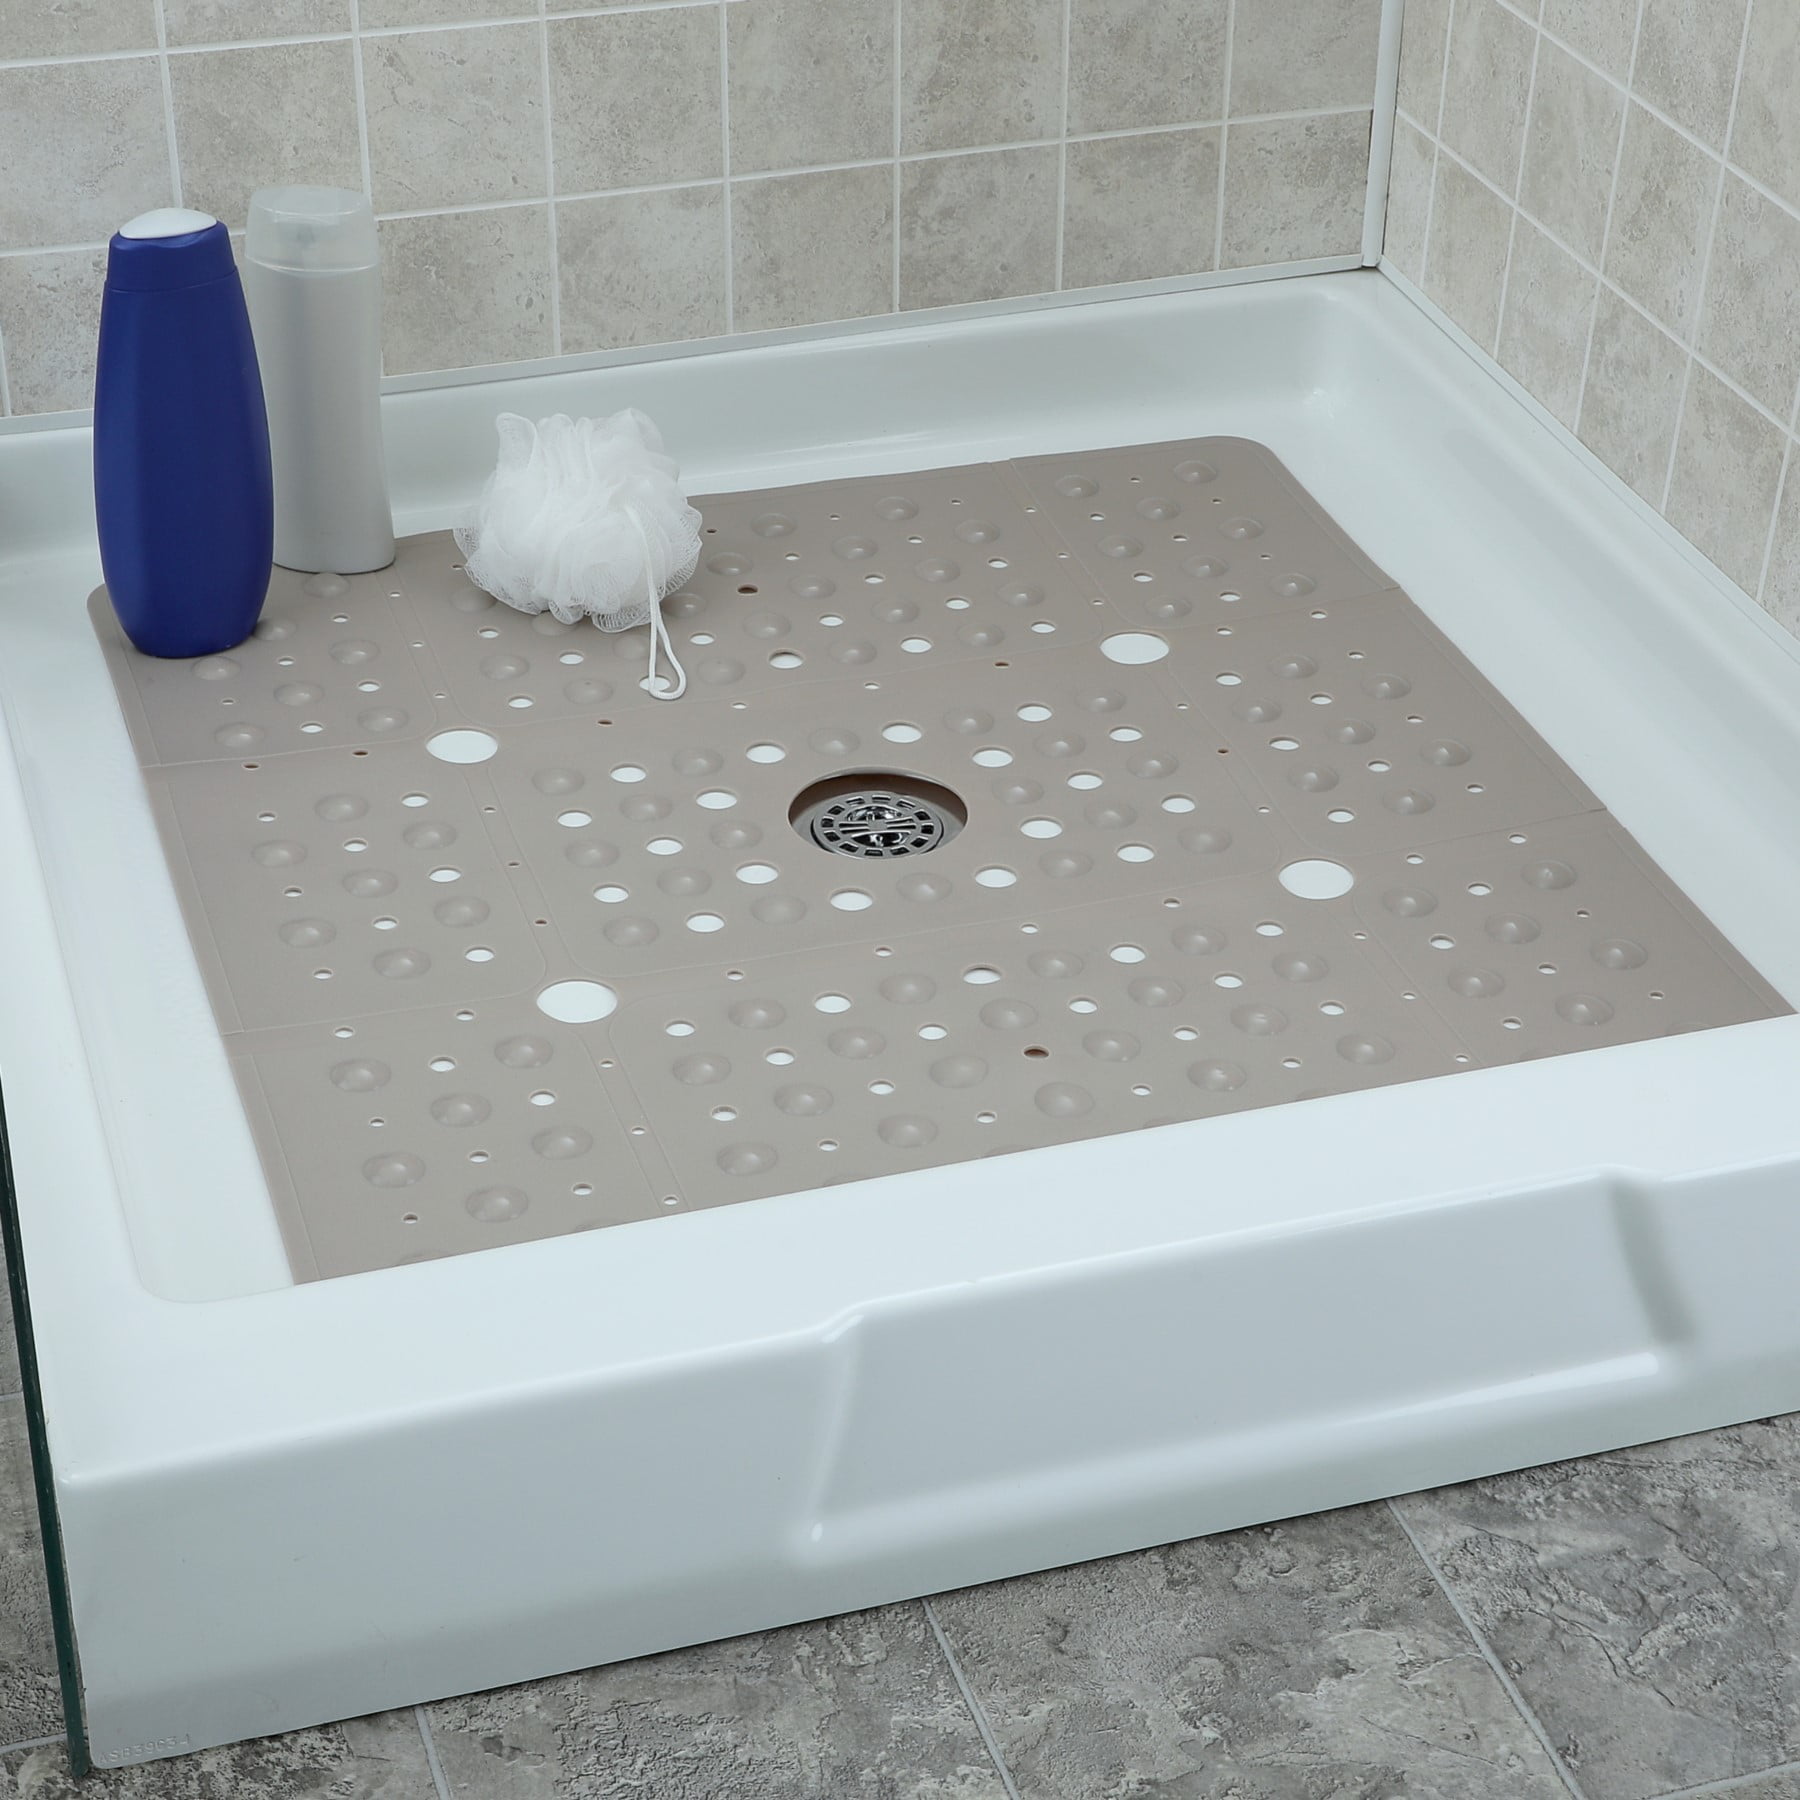 SlipX Solutions Power Grip Extra Long Bath Tub & Shower Mat 39x16, Wet Floor  Non-Slip